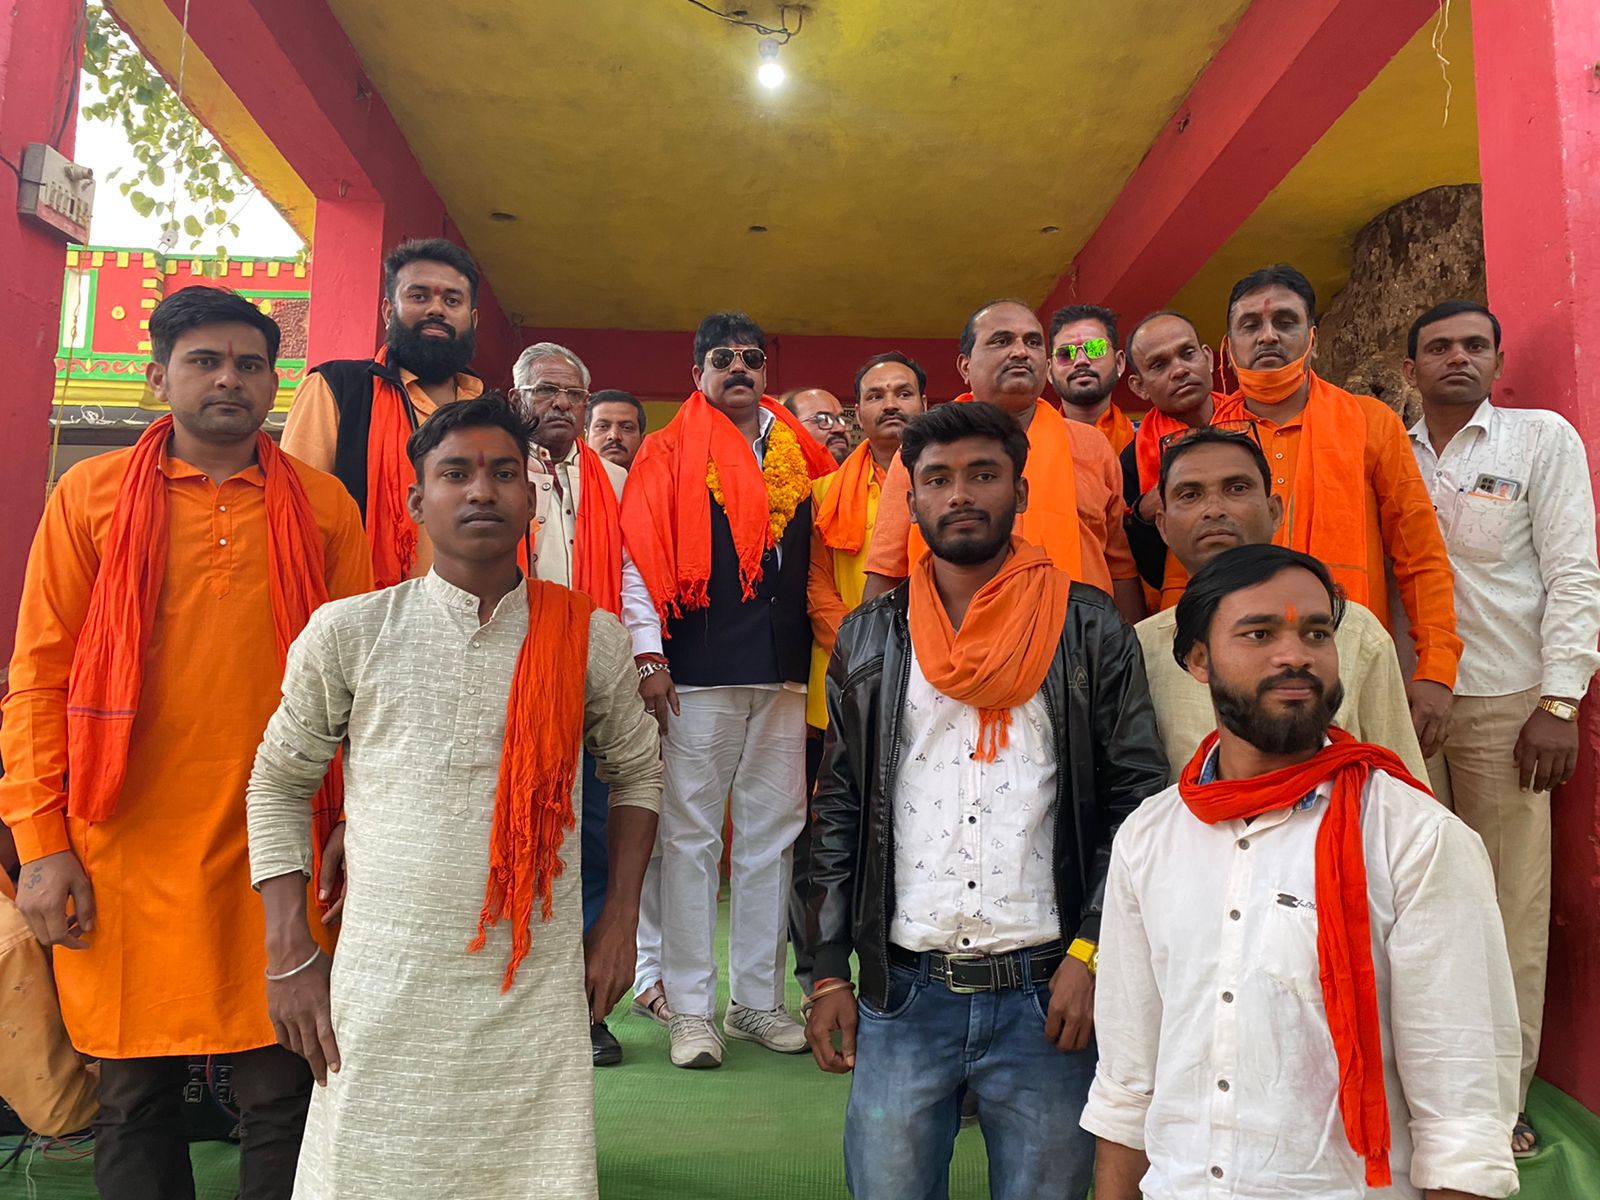 बलौदाबाजार : सर्व हिंदू समाज ने की धर्मांतरण के विरुद्ध जनसभा, रैली निकालकर सौंपा ज्ञापन